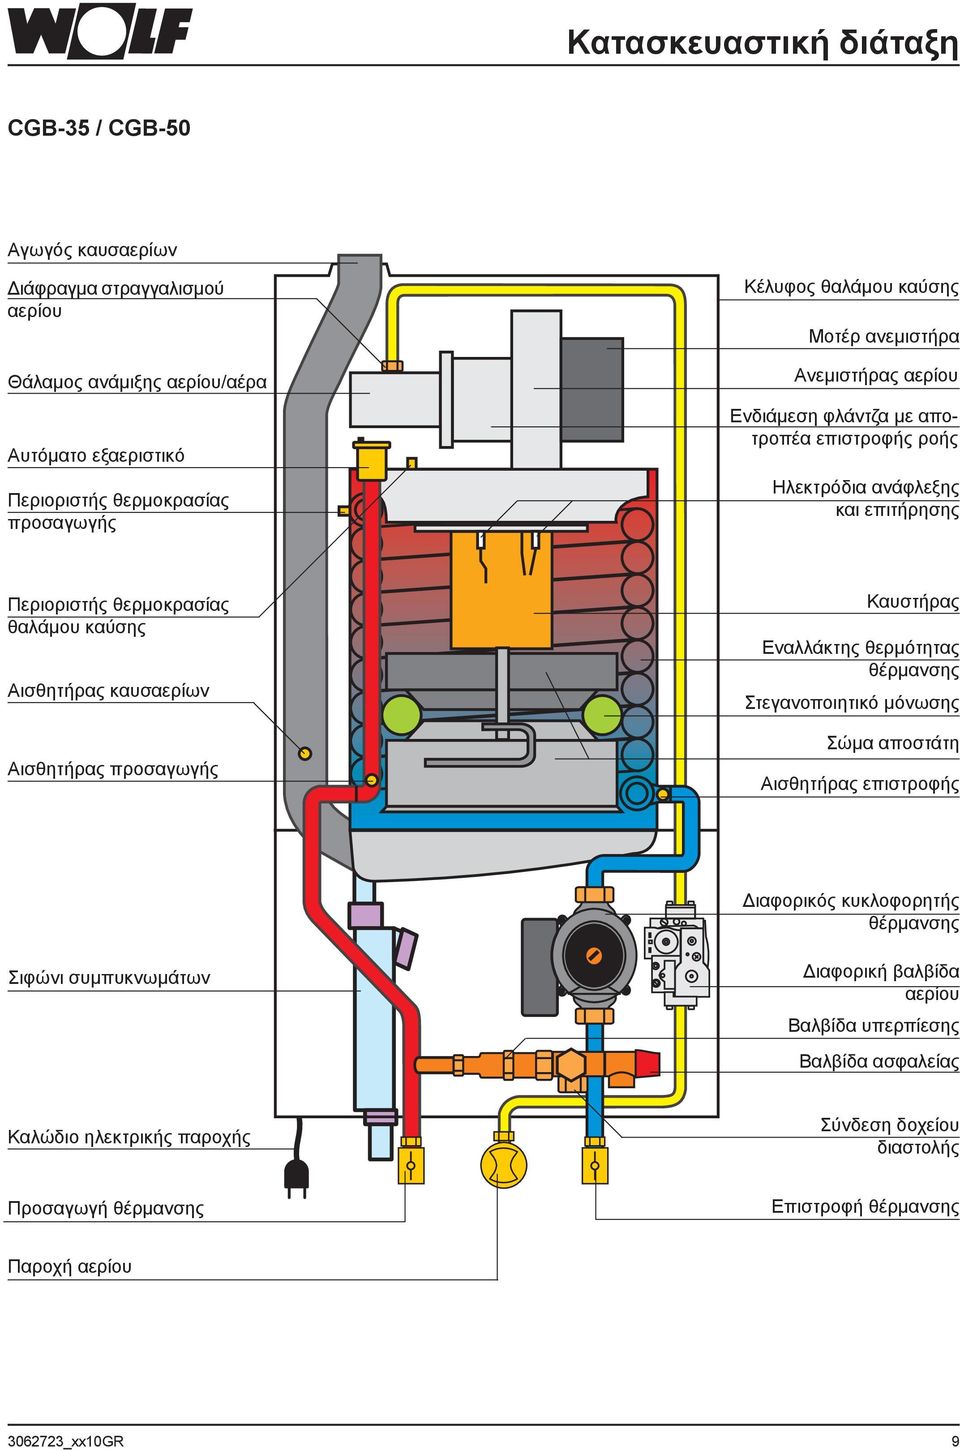 καυσαερίων Αισθητήρας προσαγωγής Καυστήρας Εναλλάκτης θερμότητας θέρμανσης Στεγανοποιητικό μόνωσης Σώμα αποστάτη Αισθητήρας επιστροφής Διαφορικός κυκλοφορητής θέρμανσης Σιφώνι